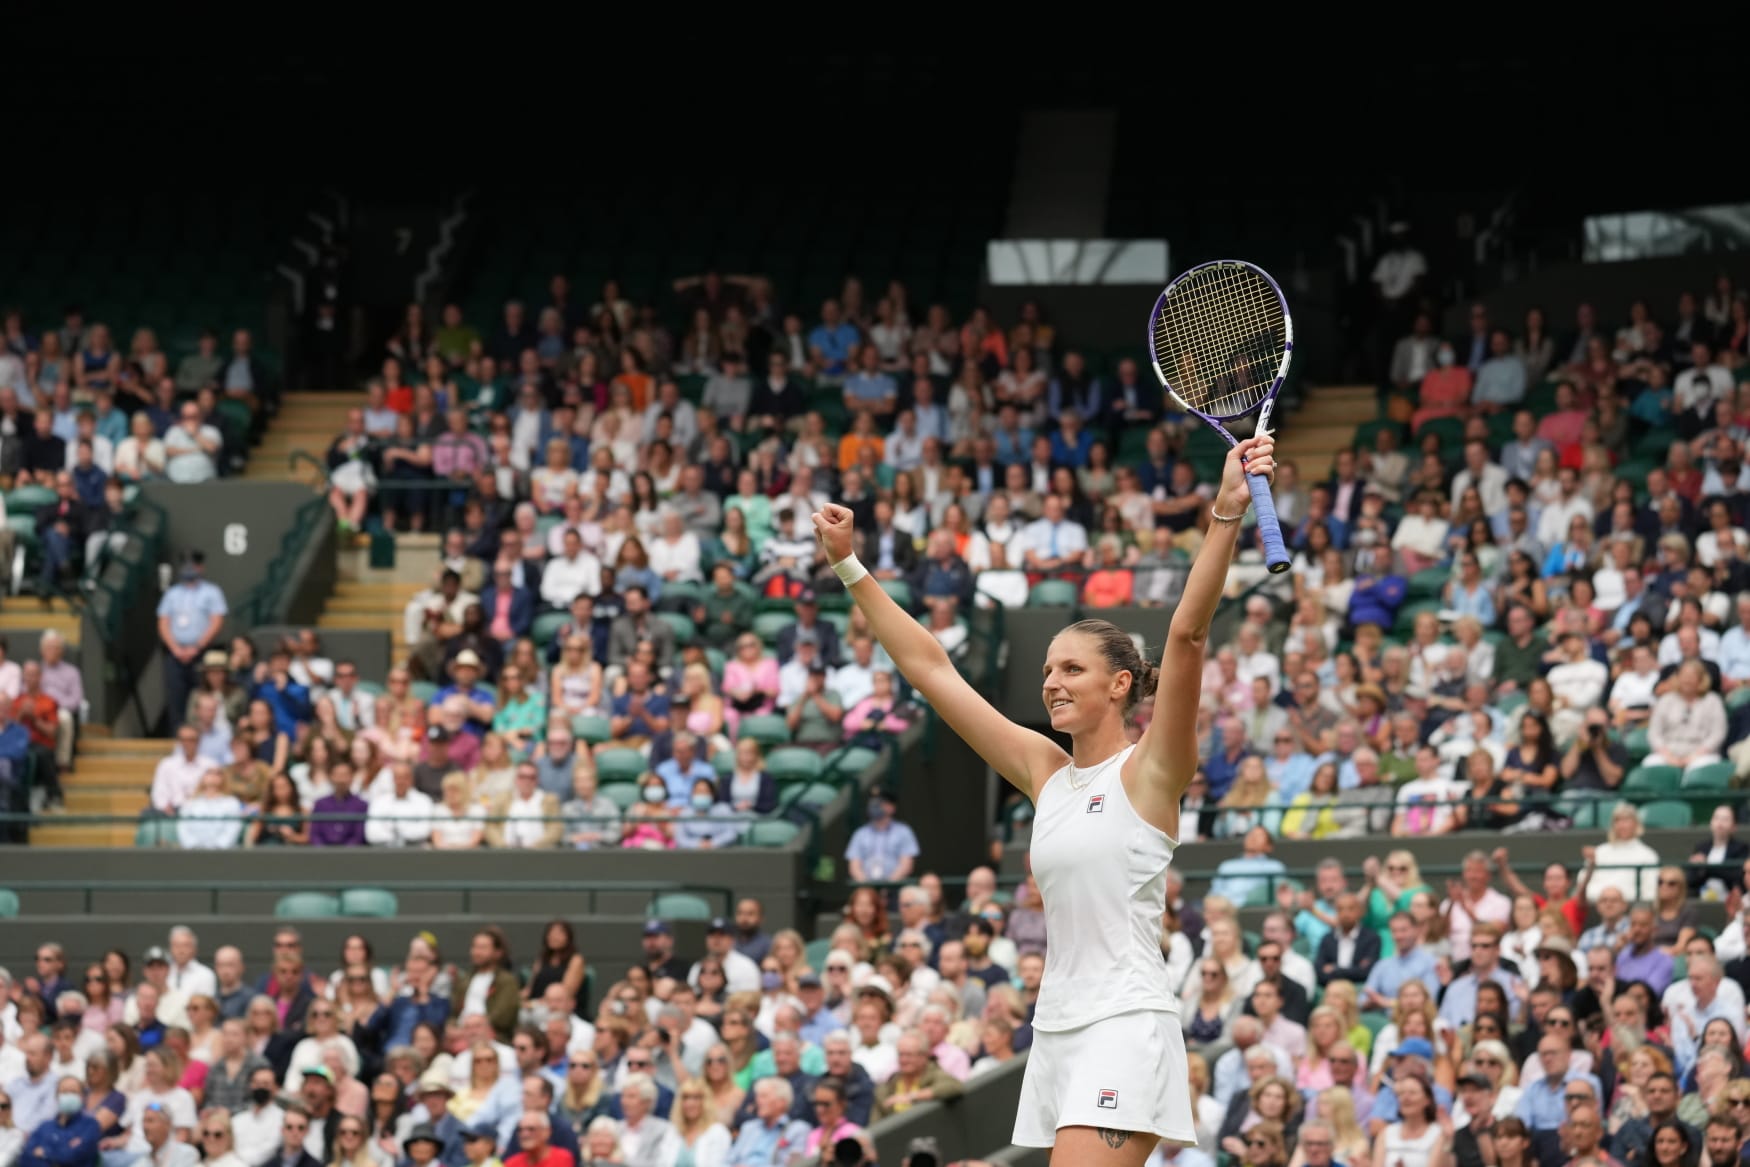 Wimbledon Plíšková vergibt zweite Chance auf ersten Grand-Slam-Titel Radio Prague International